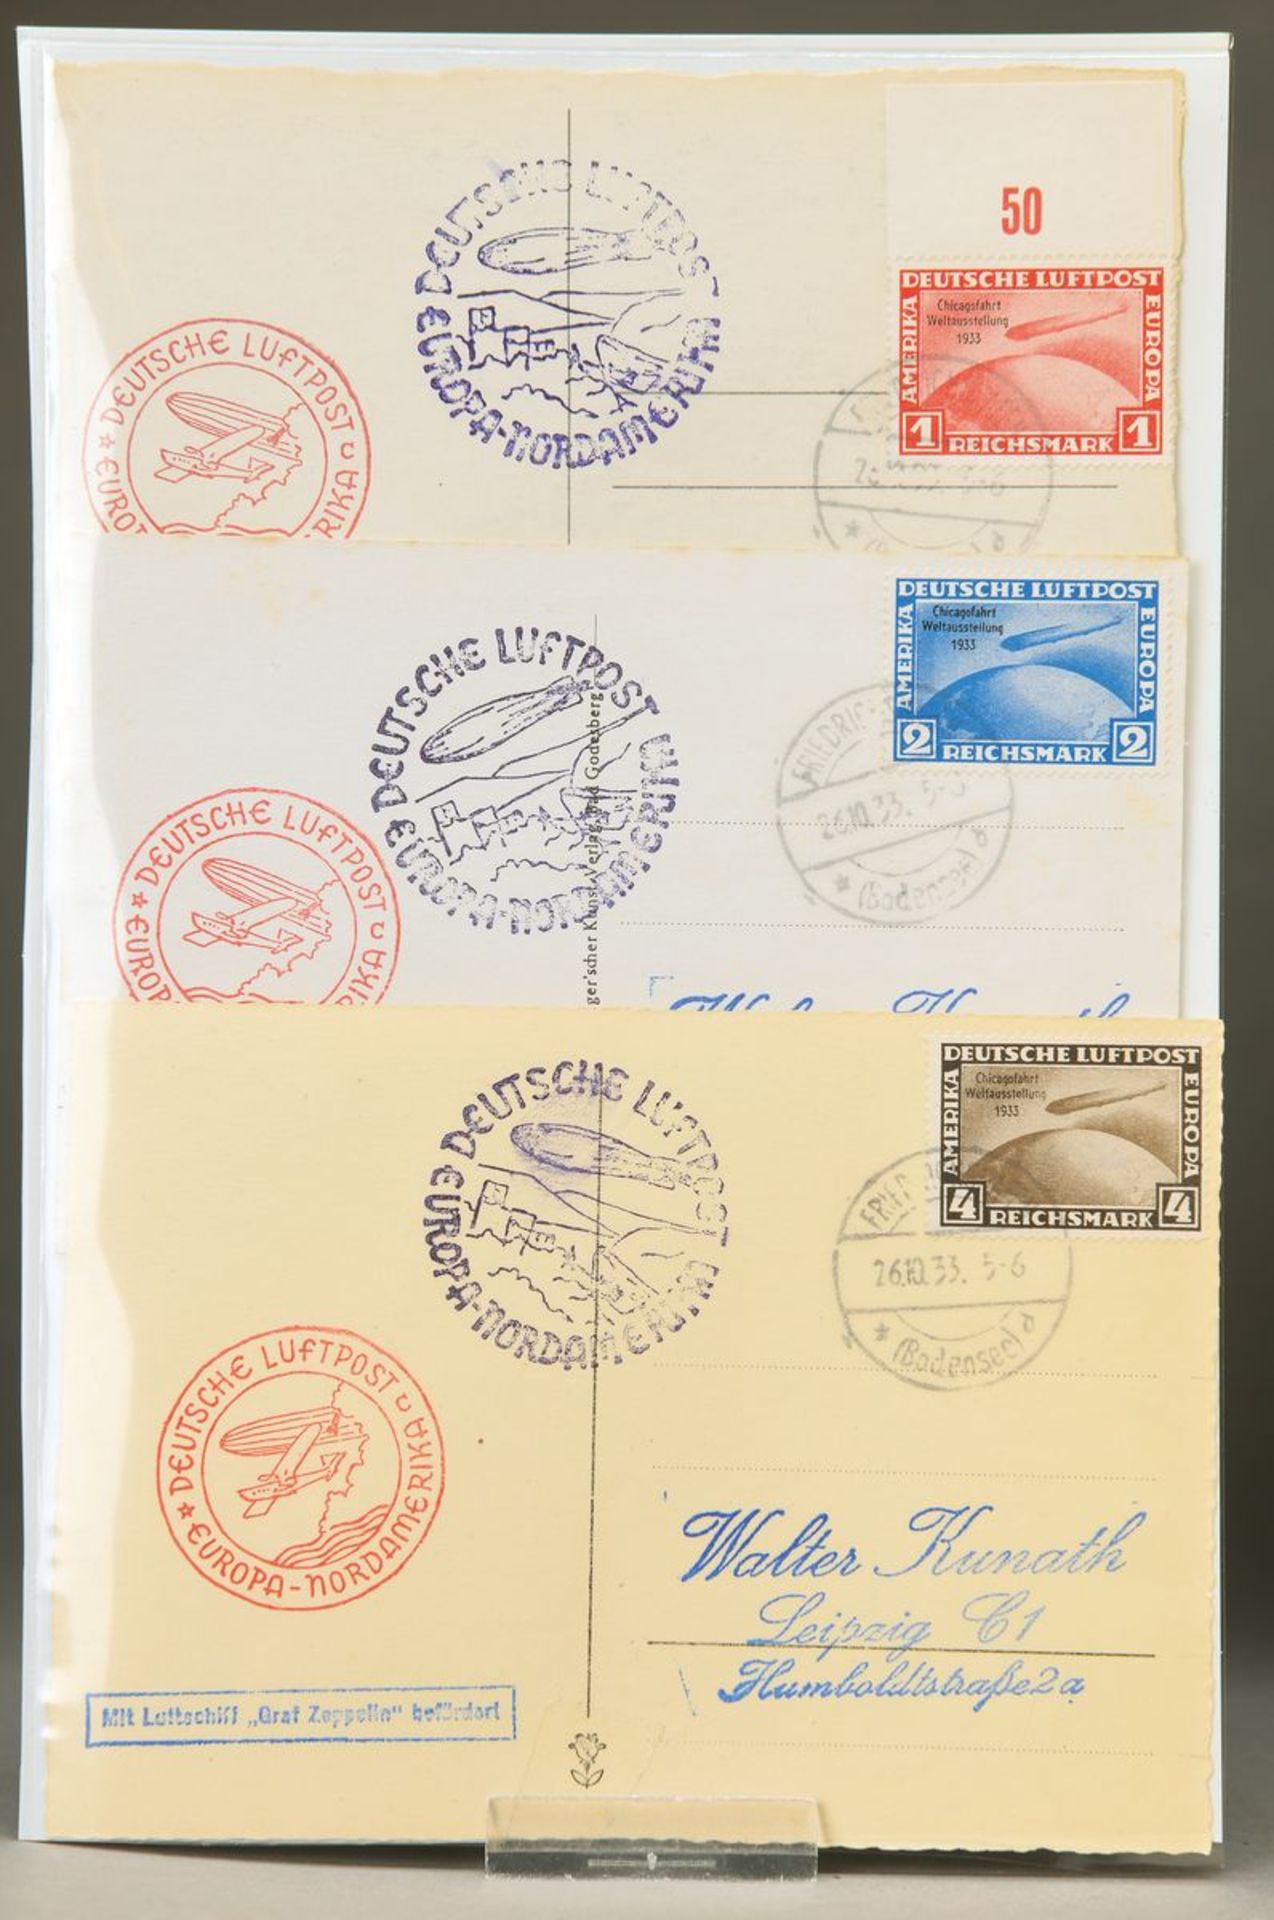 3 Postkarten, Chicago-Fahrt 1933, Weltausstellung, Satz auf 3 Postkarten verteilt, 1,2 u. 4 Mark,